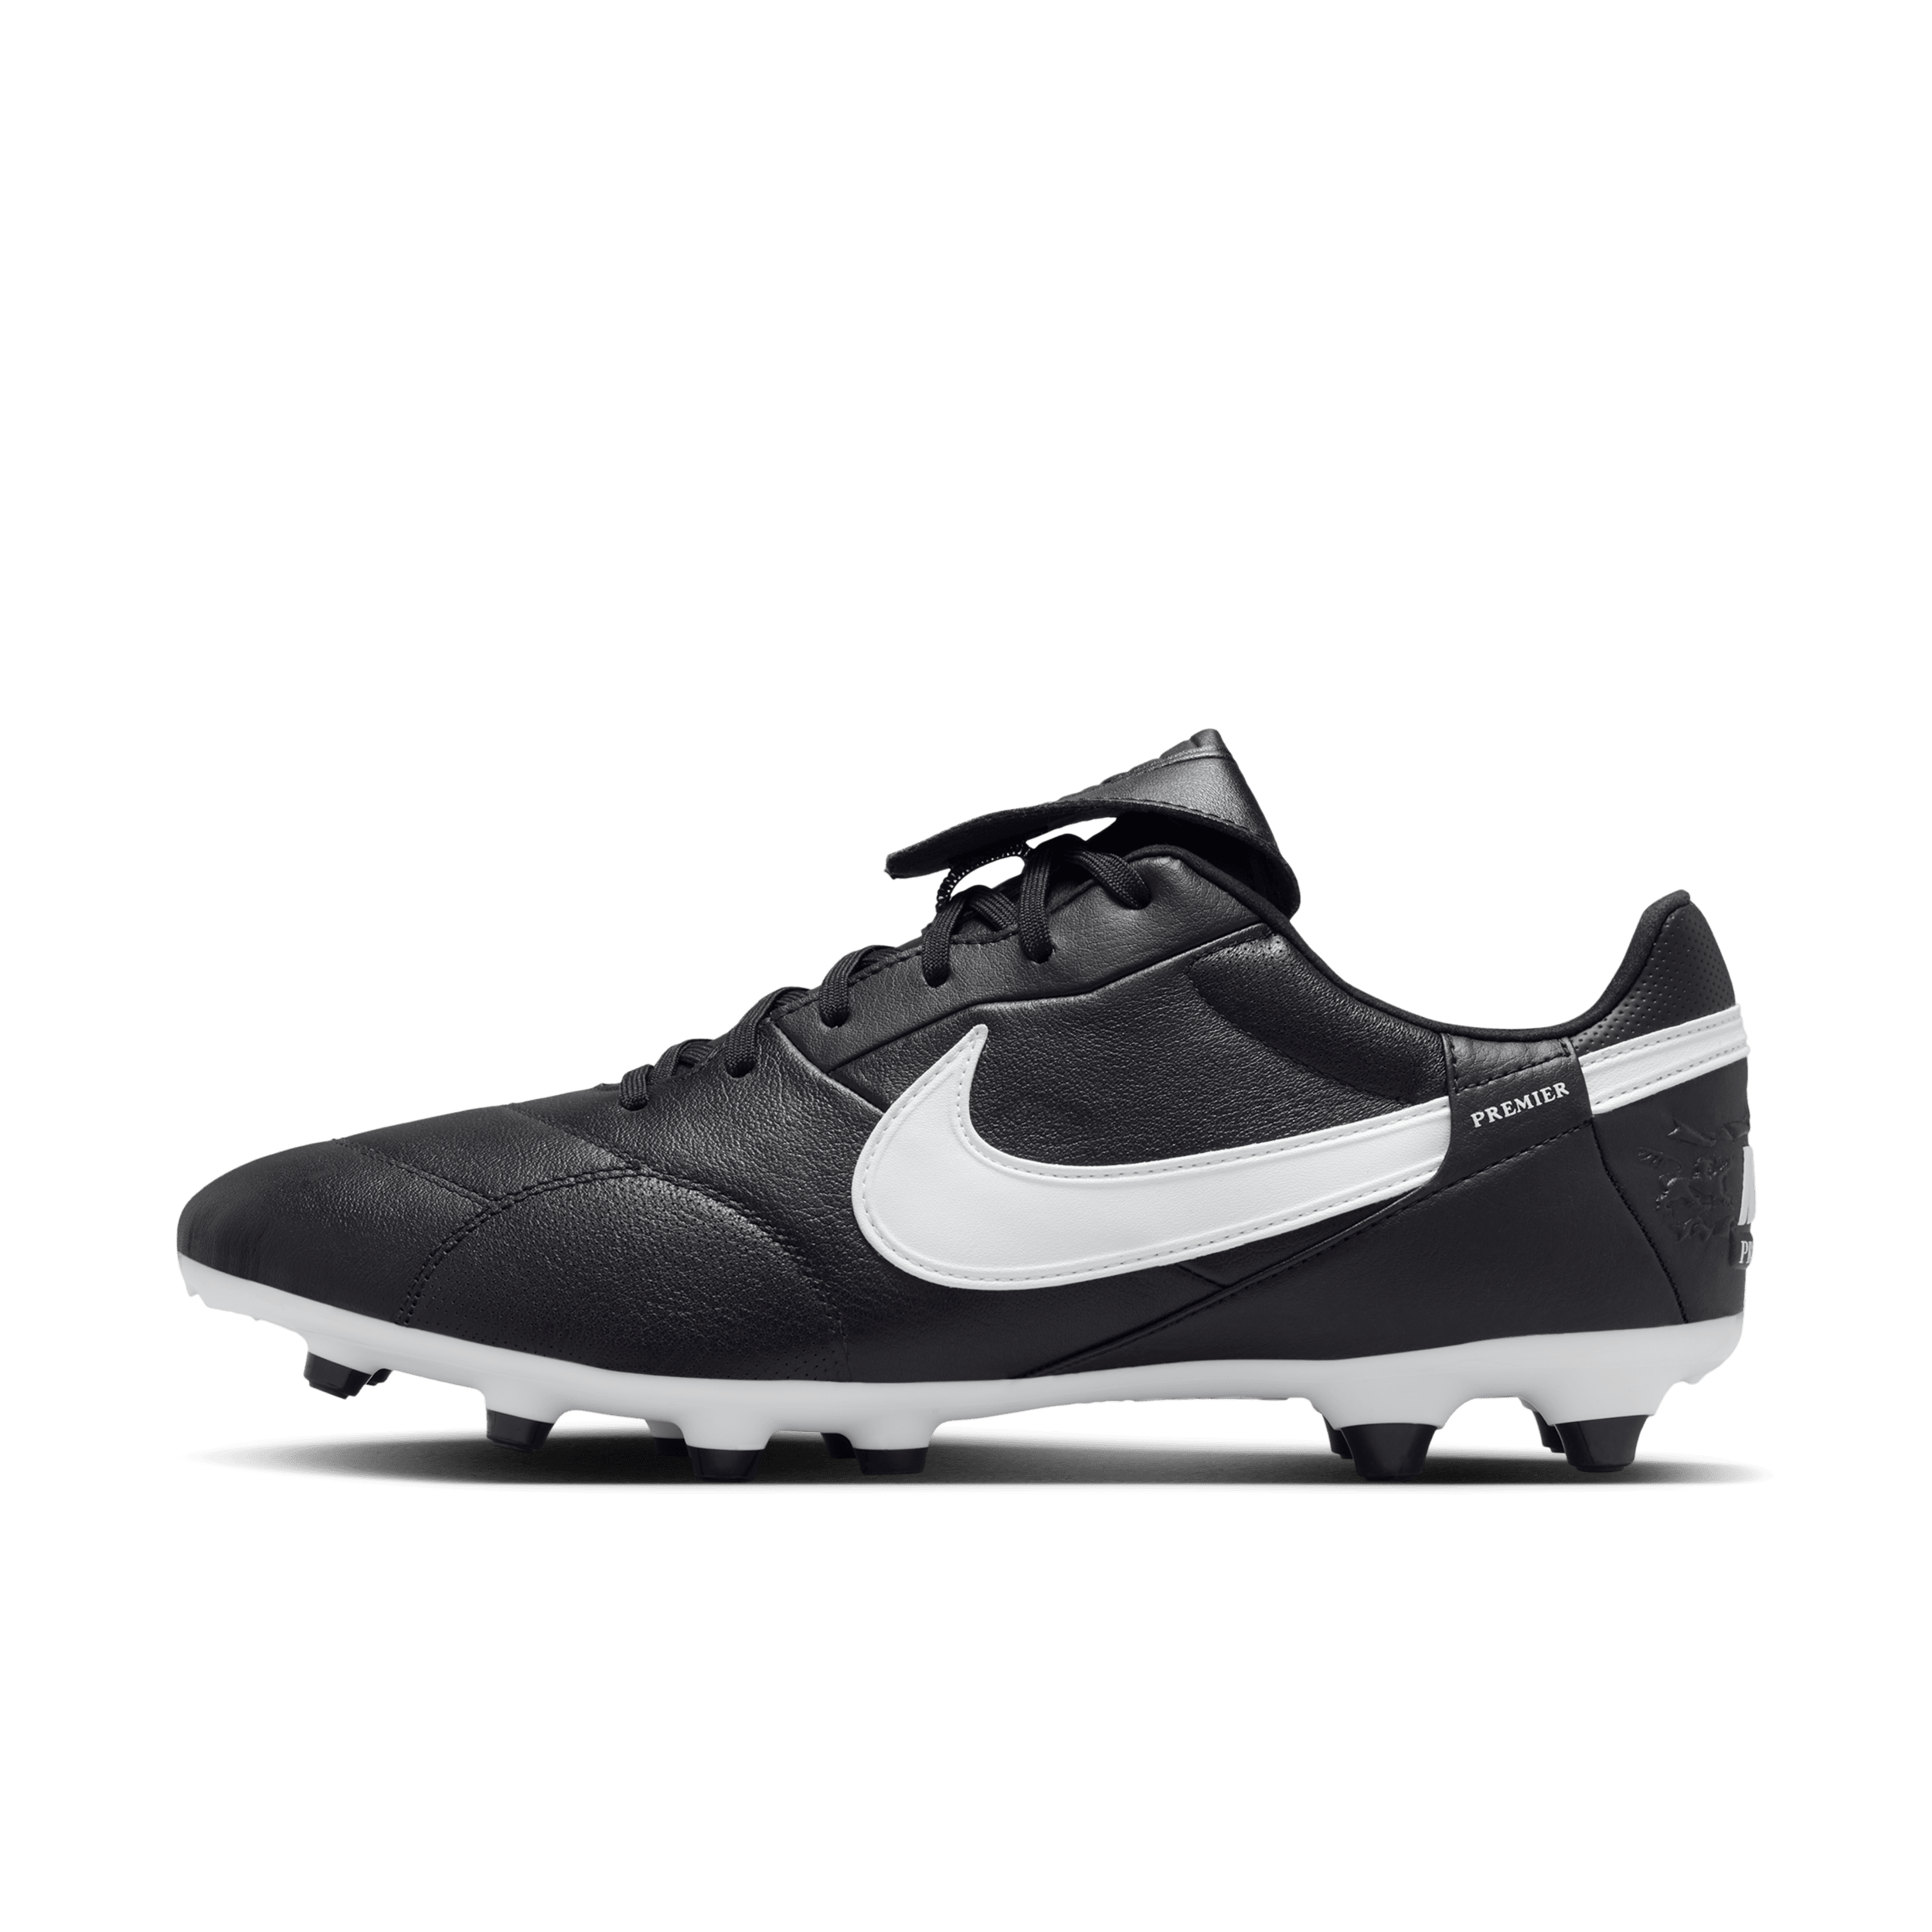 Nike Premier 3 low top voetbalschoenen (stevige ondergrond) - Zwart